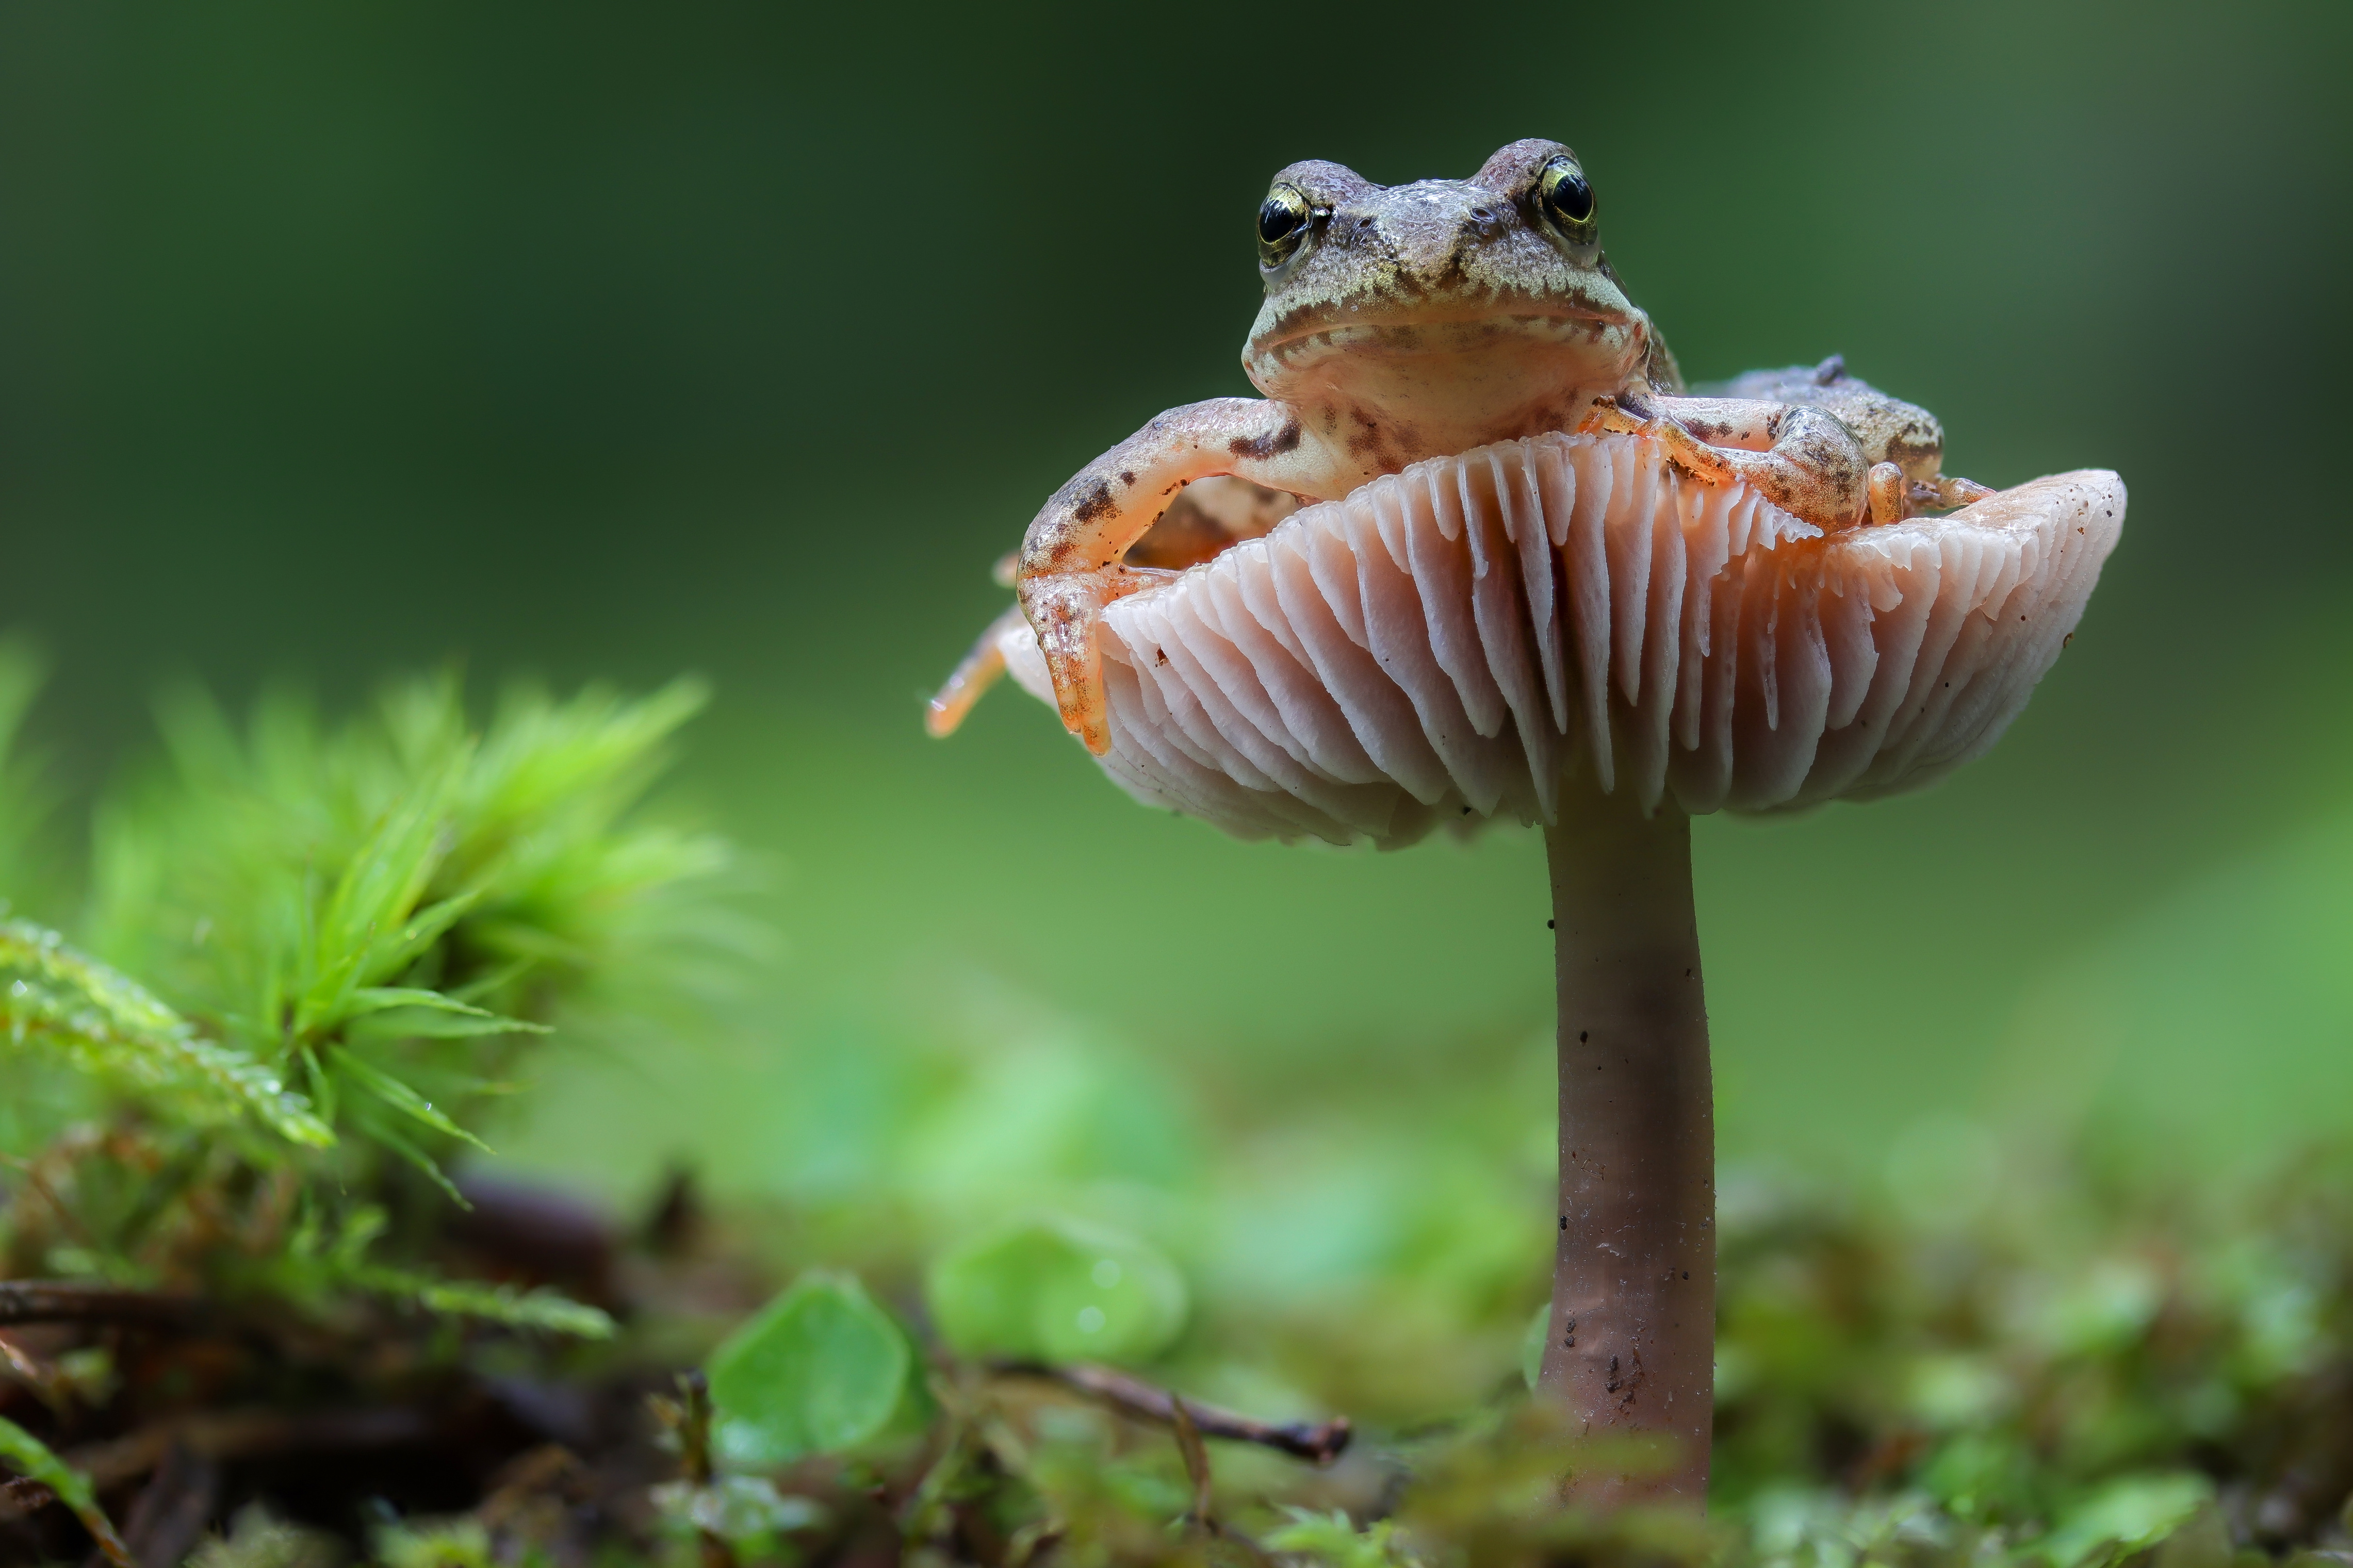 Zastaki.com - Зеленая лягушка сидит на грибе в лесу